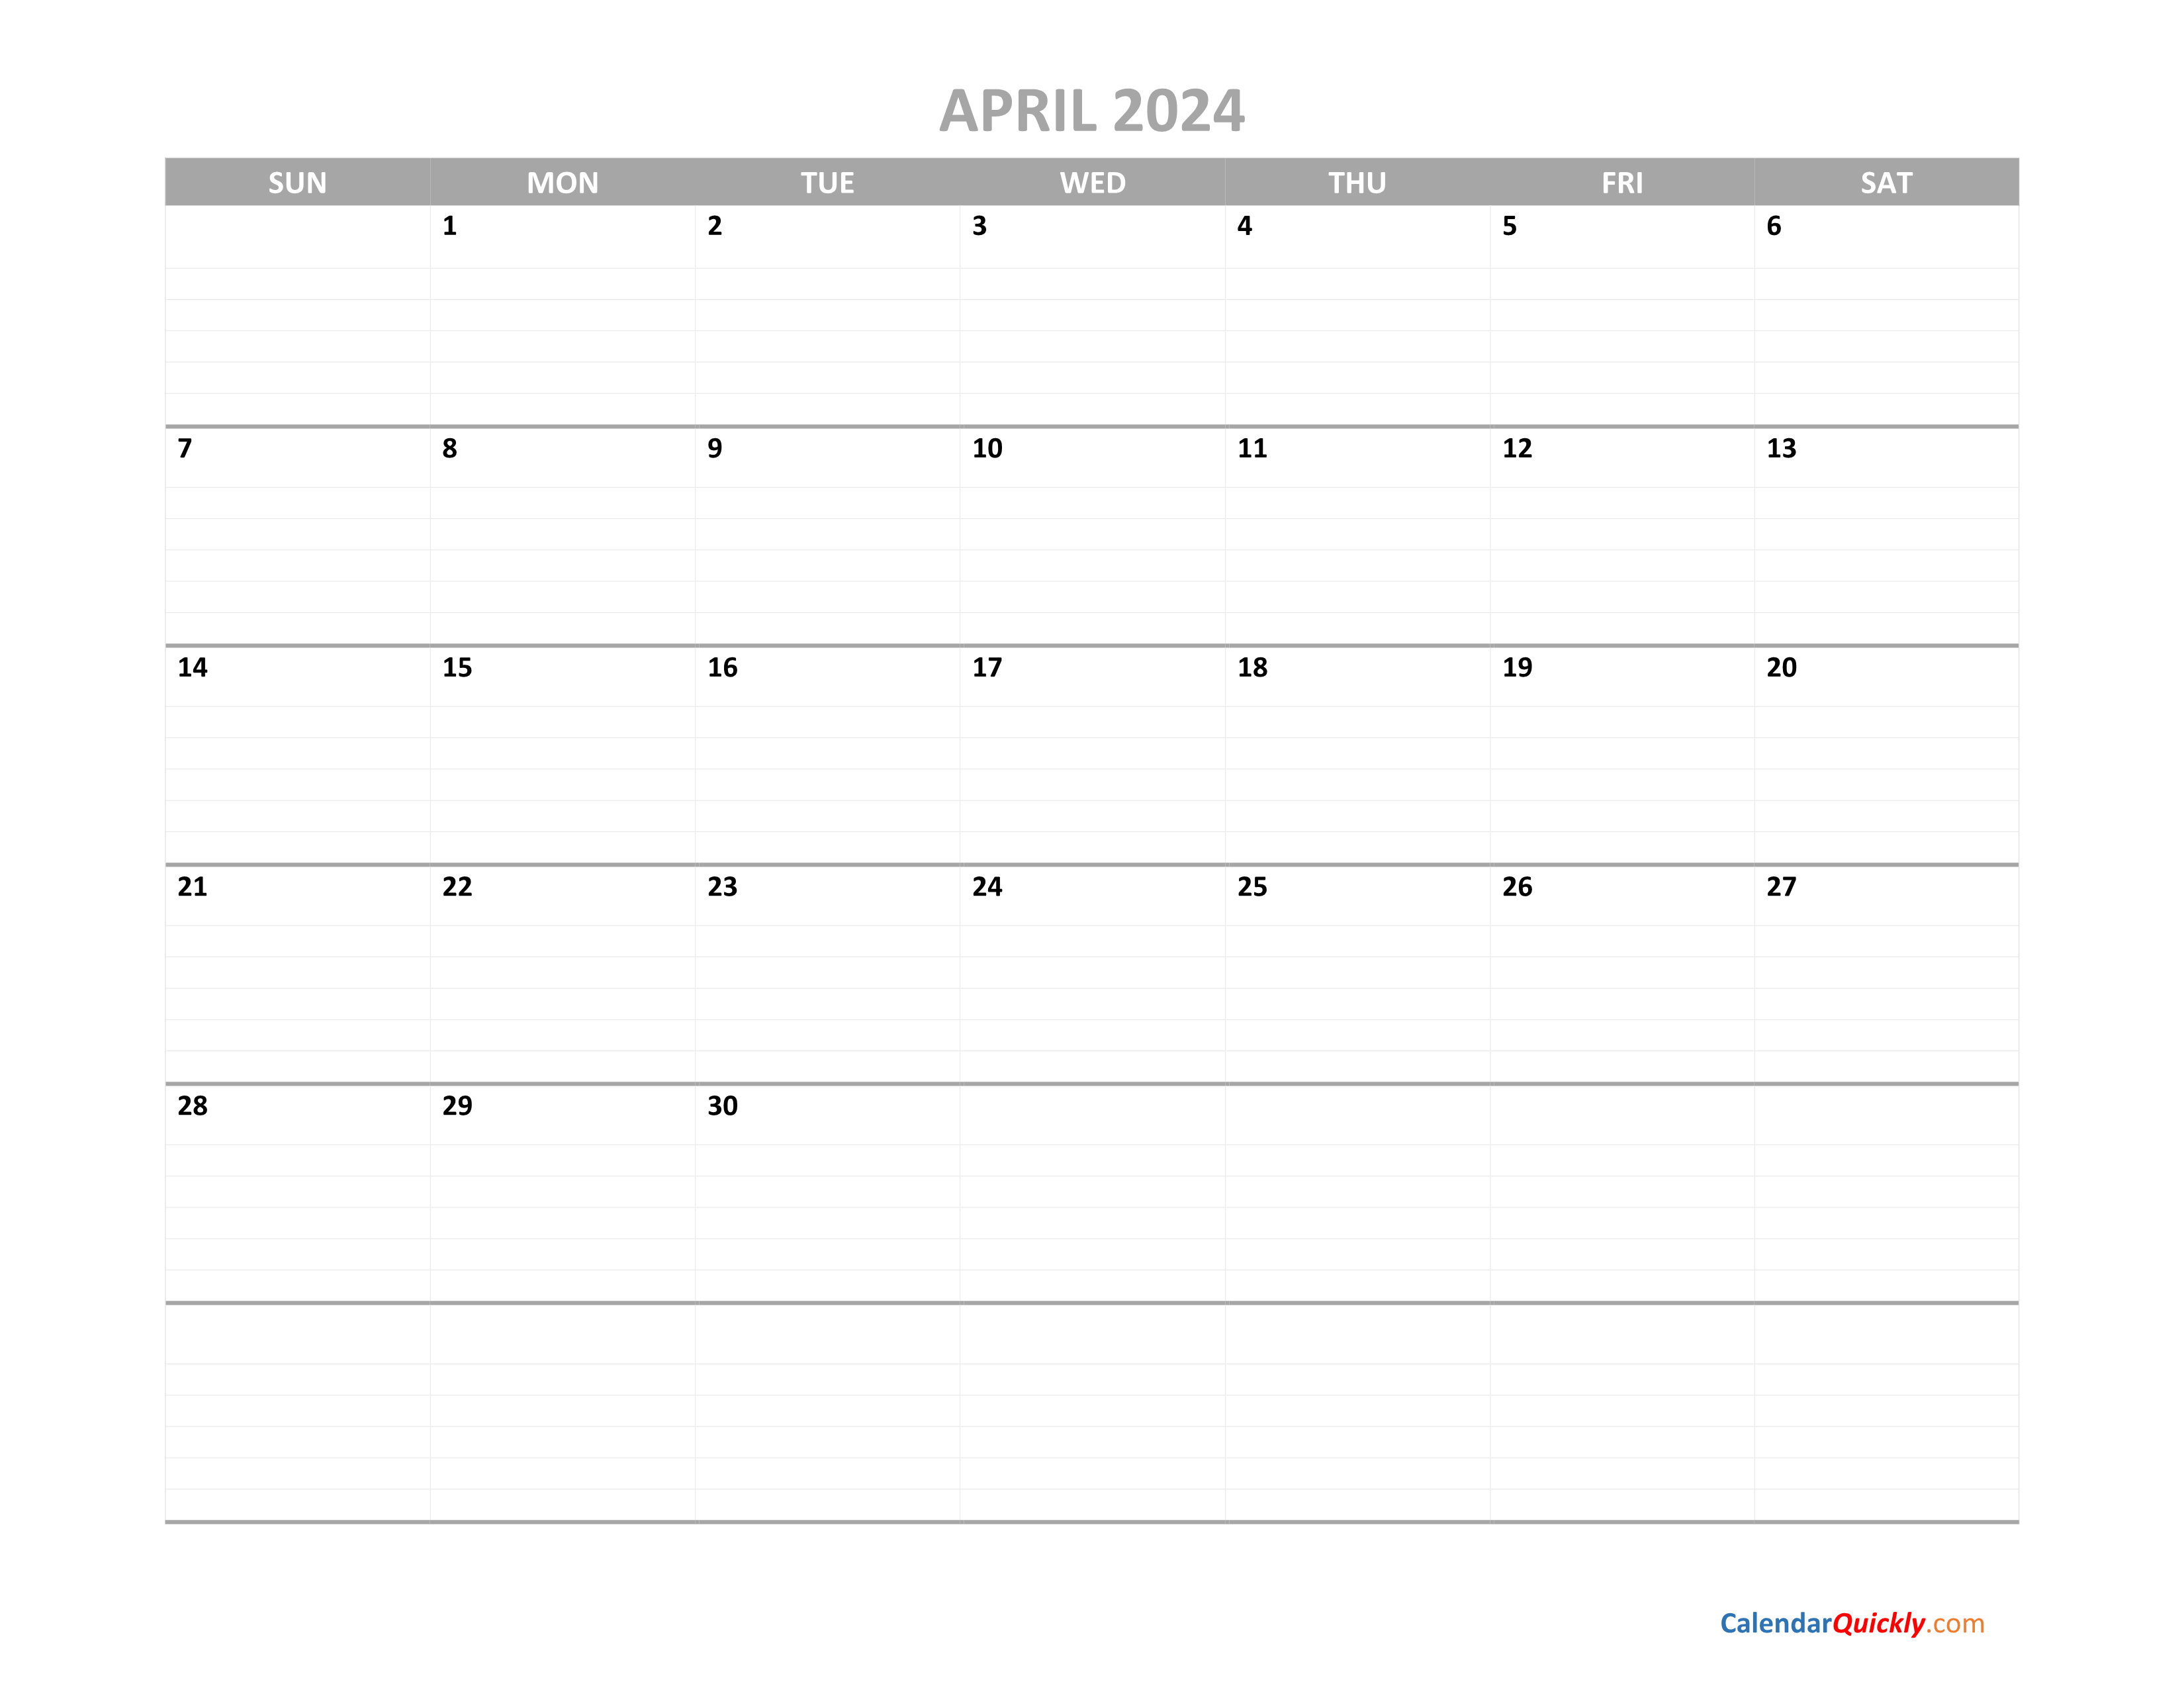 April Calendar 2024 Printable Calendar Quickly 2024 Calendar Printable